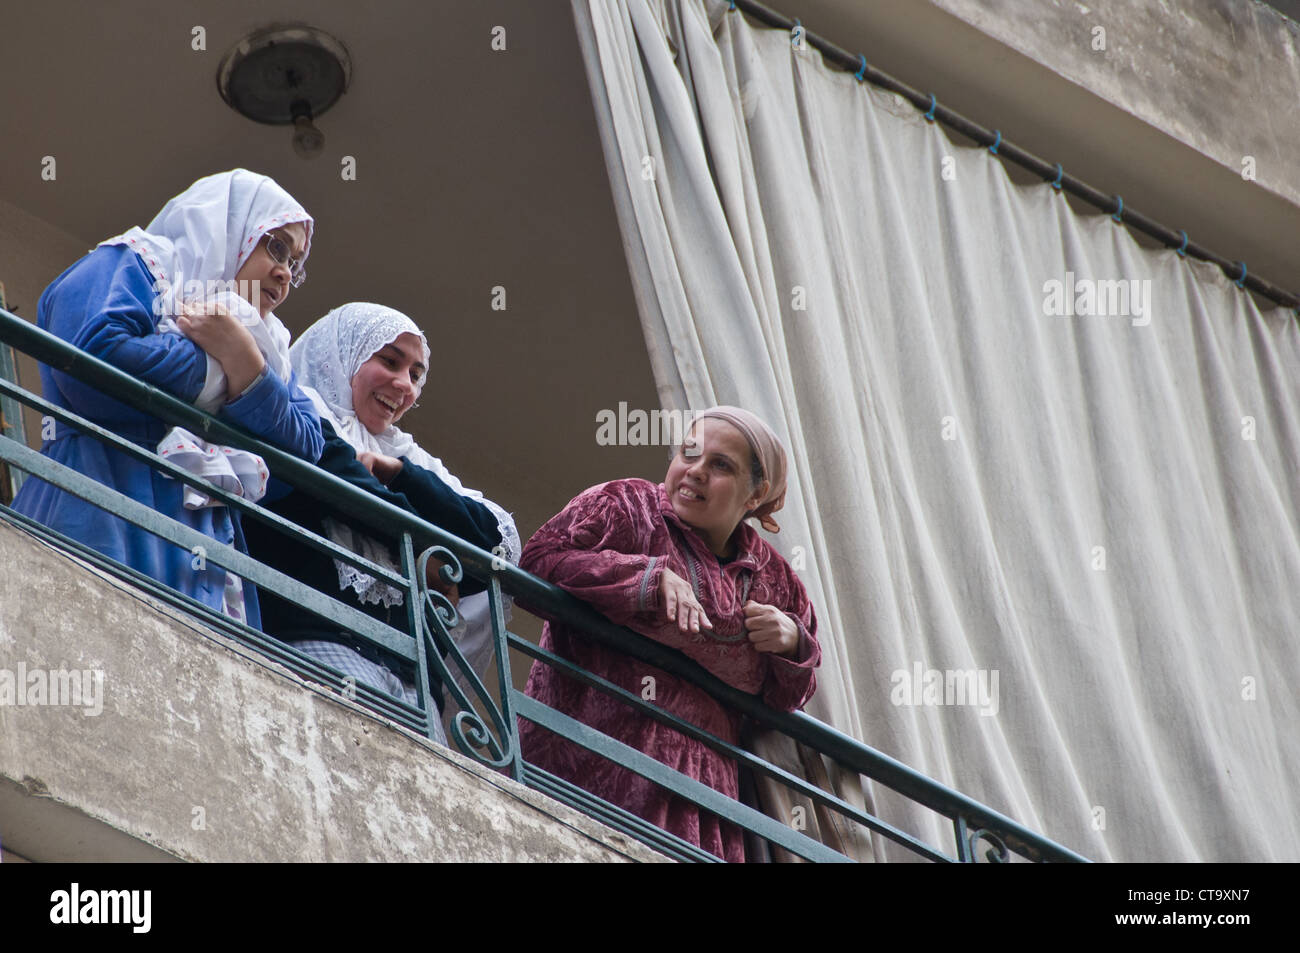 Les femmes égyptiennes à la recherche du balcon lors de manifestations Le Caire Égypte Janvier 2012 Banque D'Images